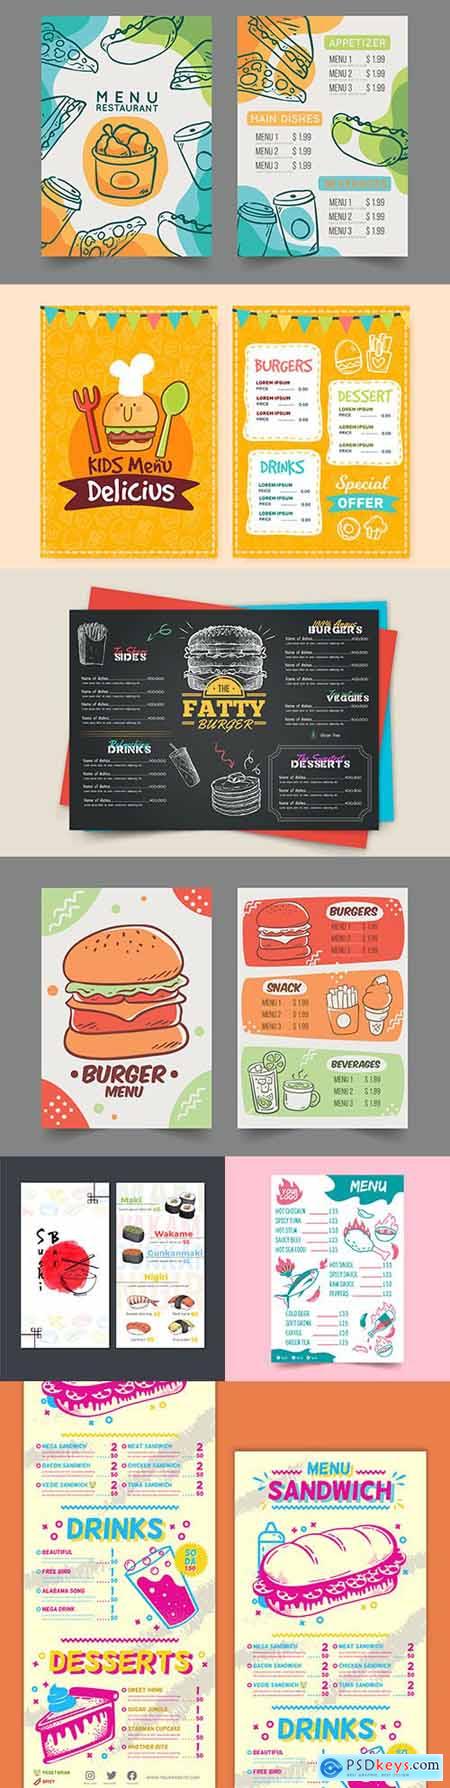 Fast food and childrens menu cafe design illustration